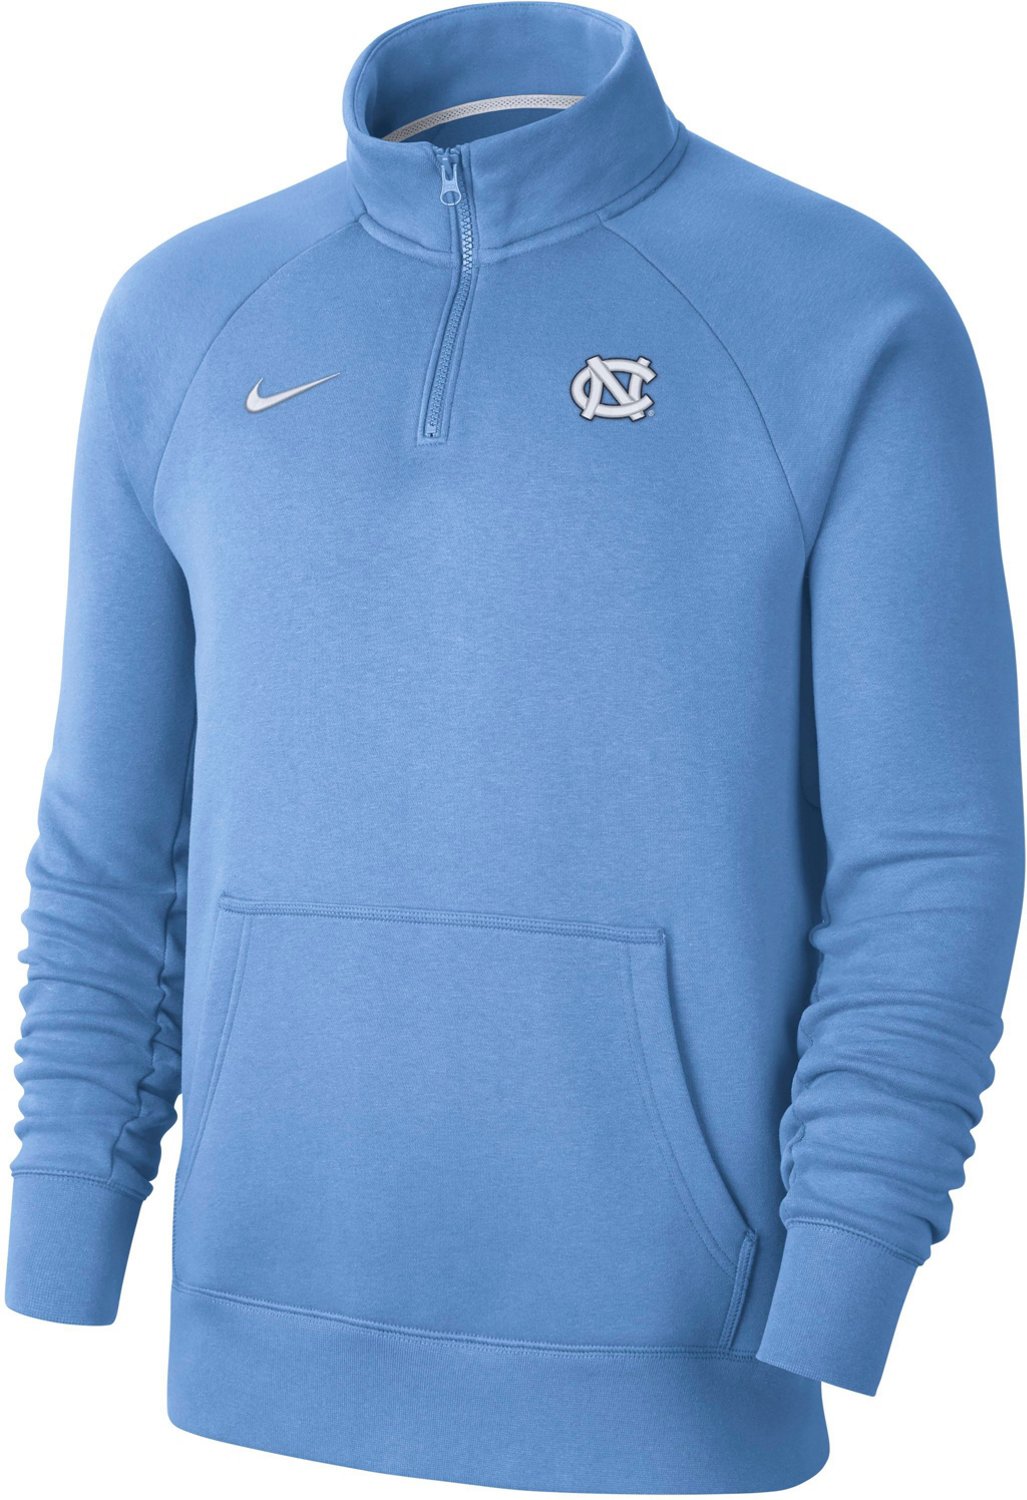 Nike Men's University of North Carolina 1/4 Zip Fleece Top | Academy